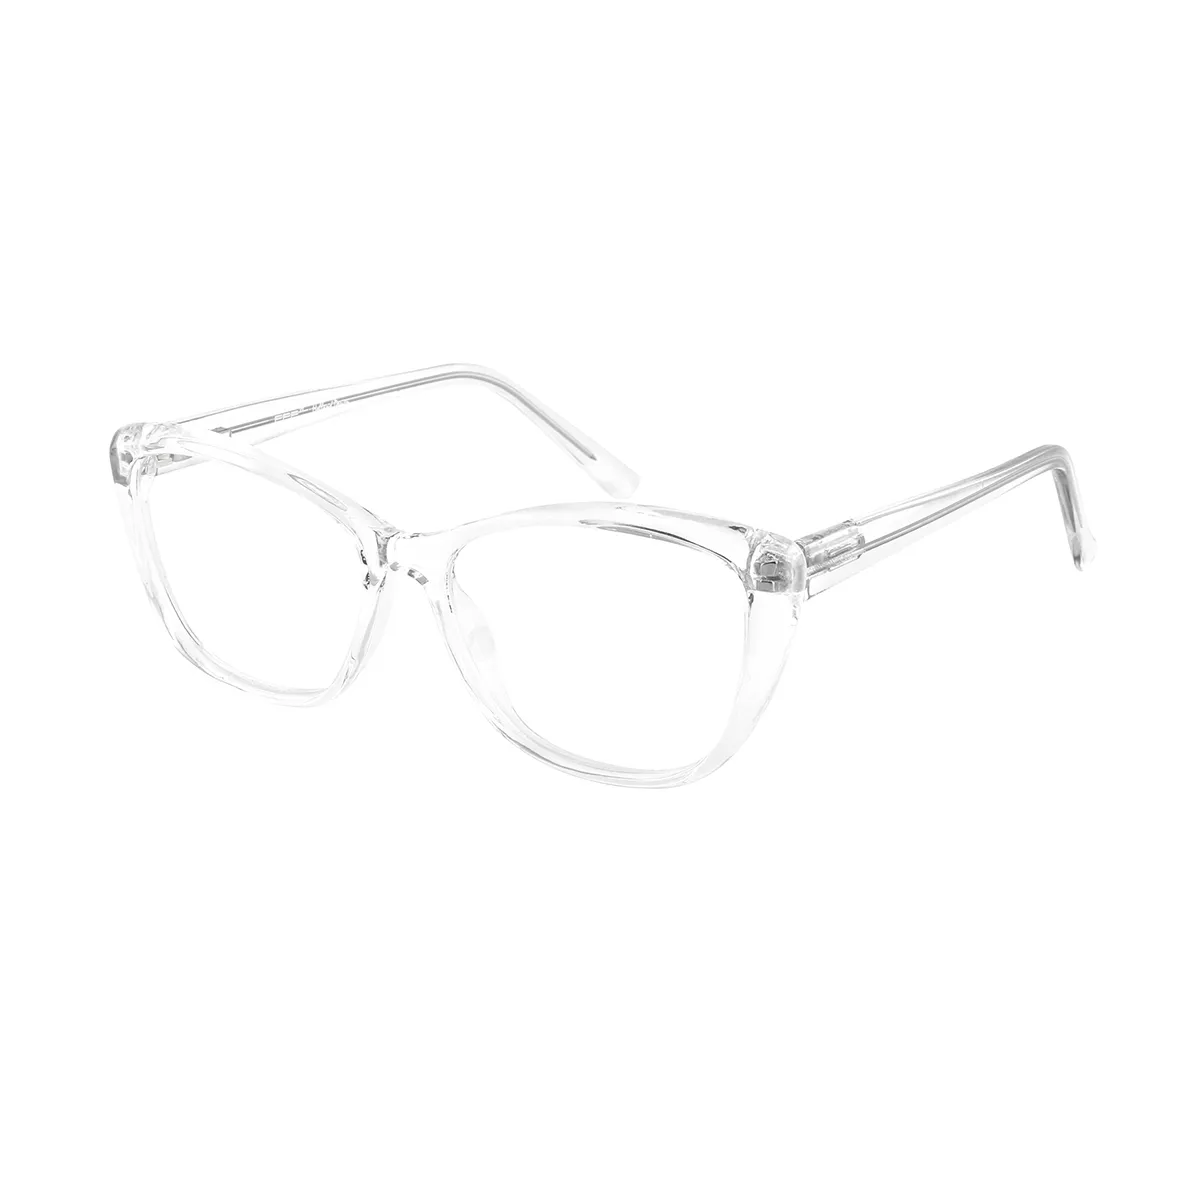 Classic Cat-eye Transparent Eyeglasses for Women & Men